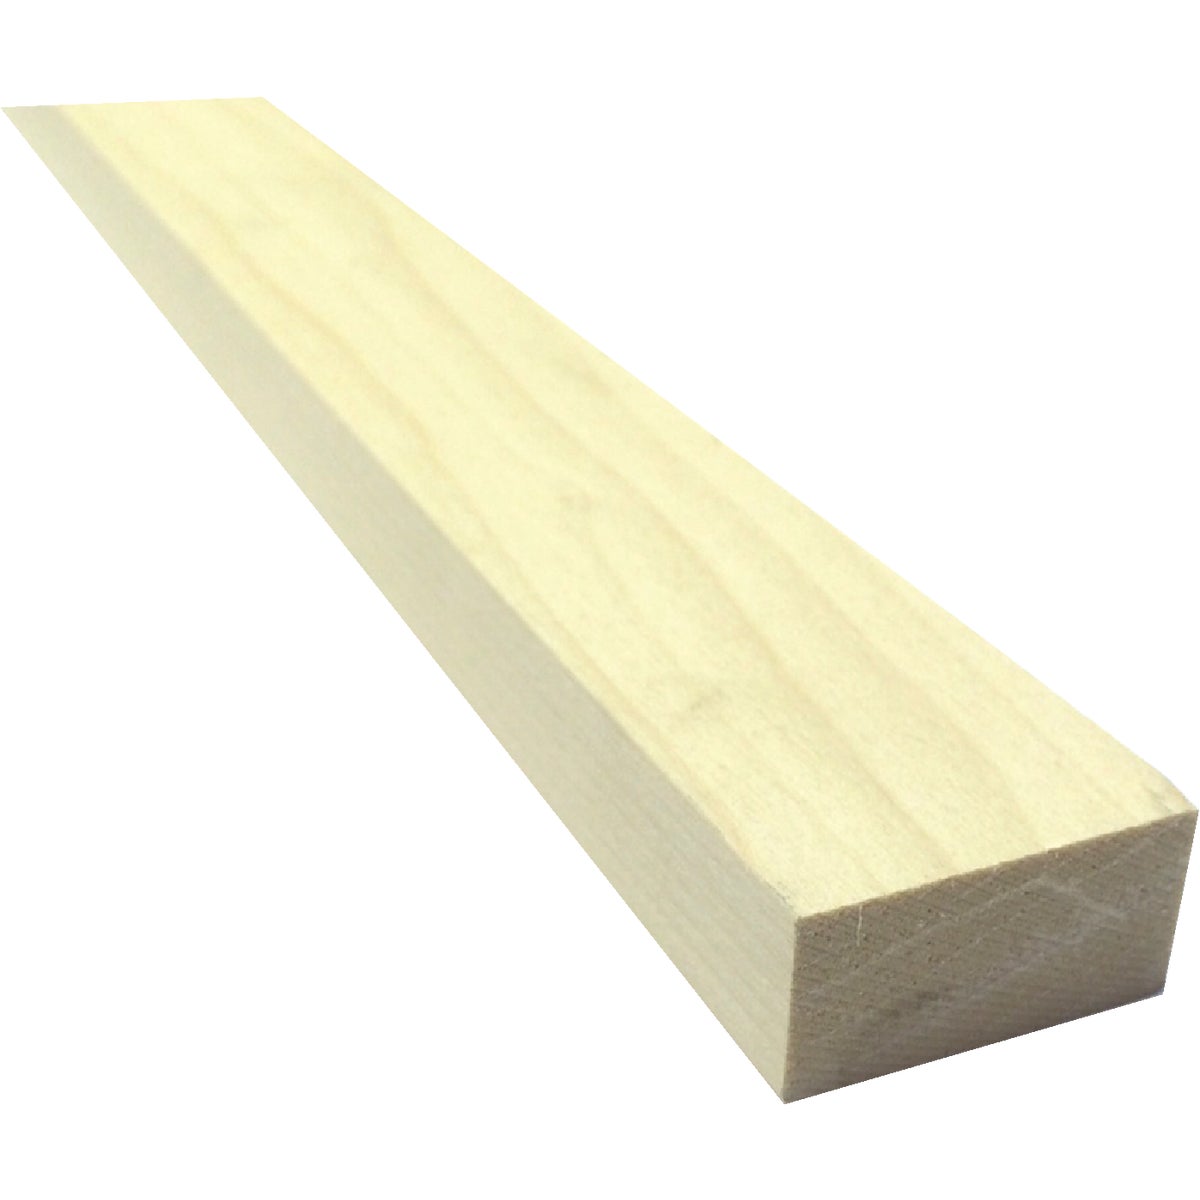 Waddell 1 In. x 2 In. x 4 Ft. Poplar Wood Board